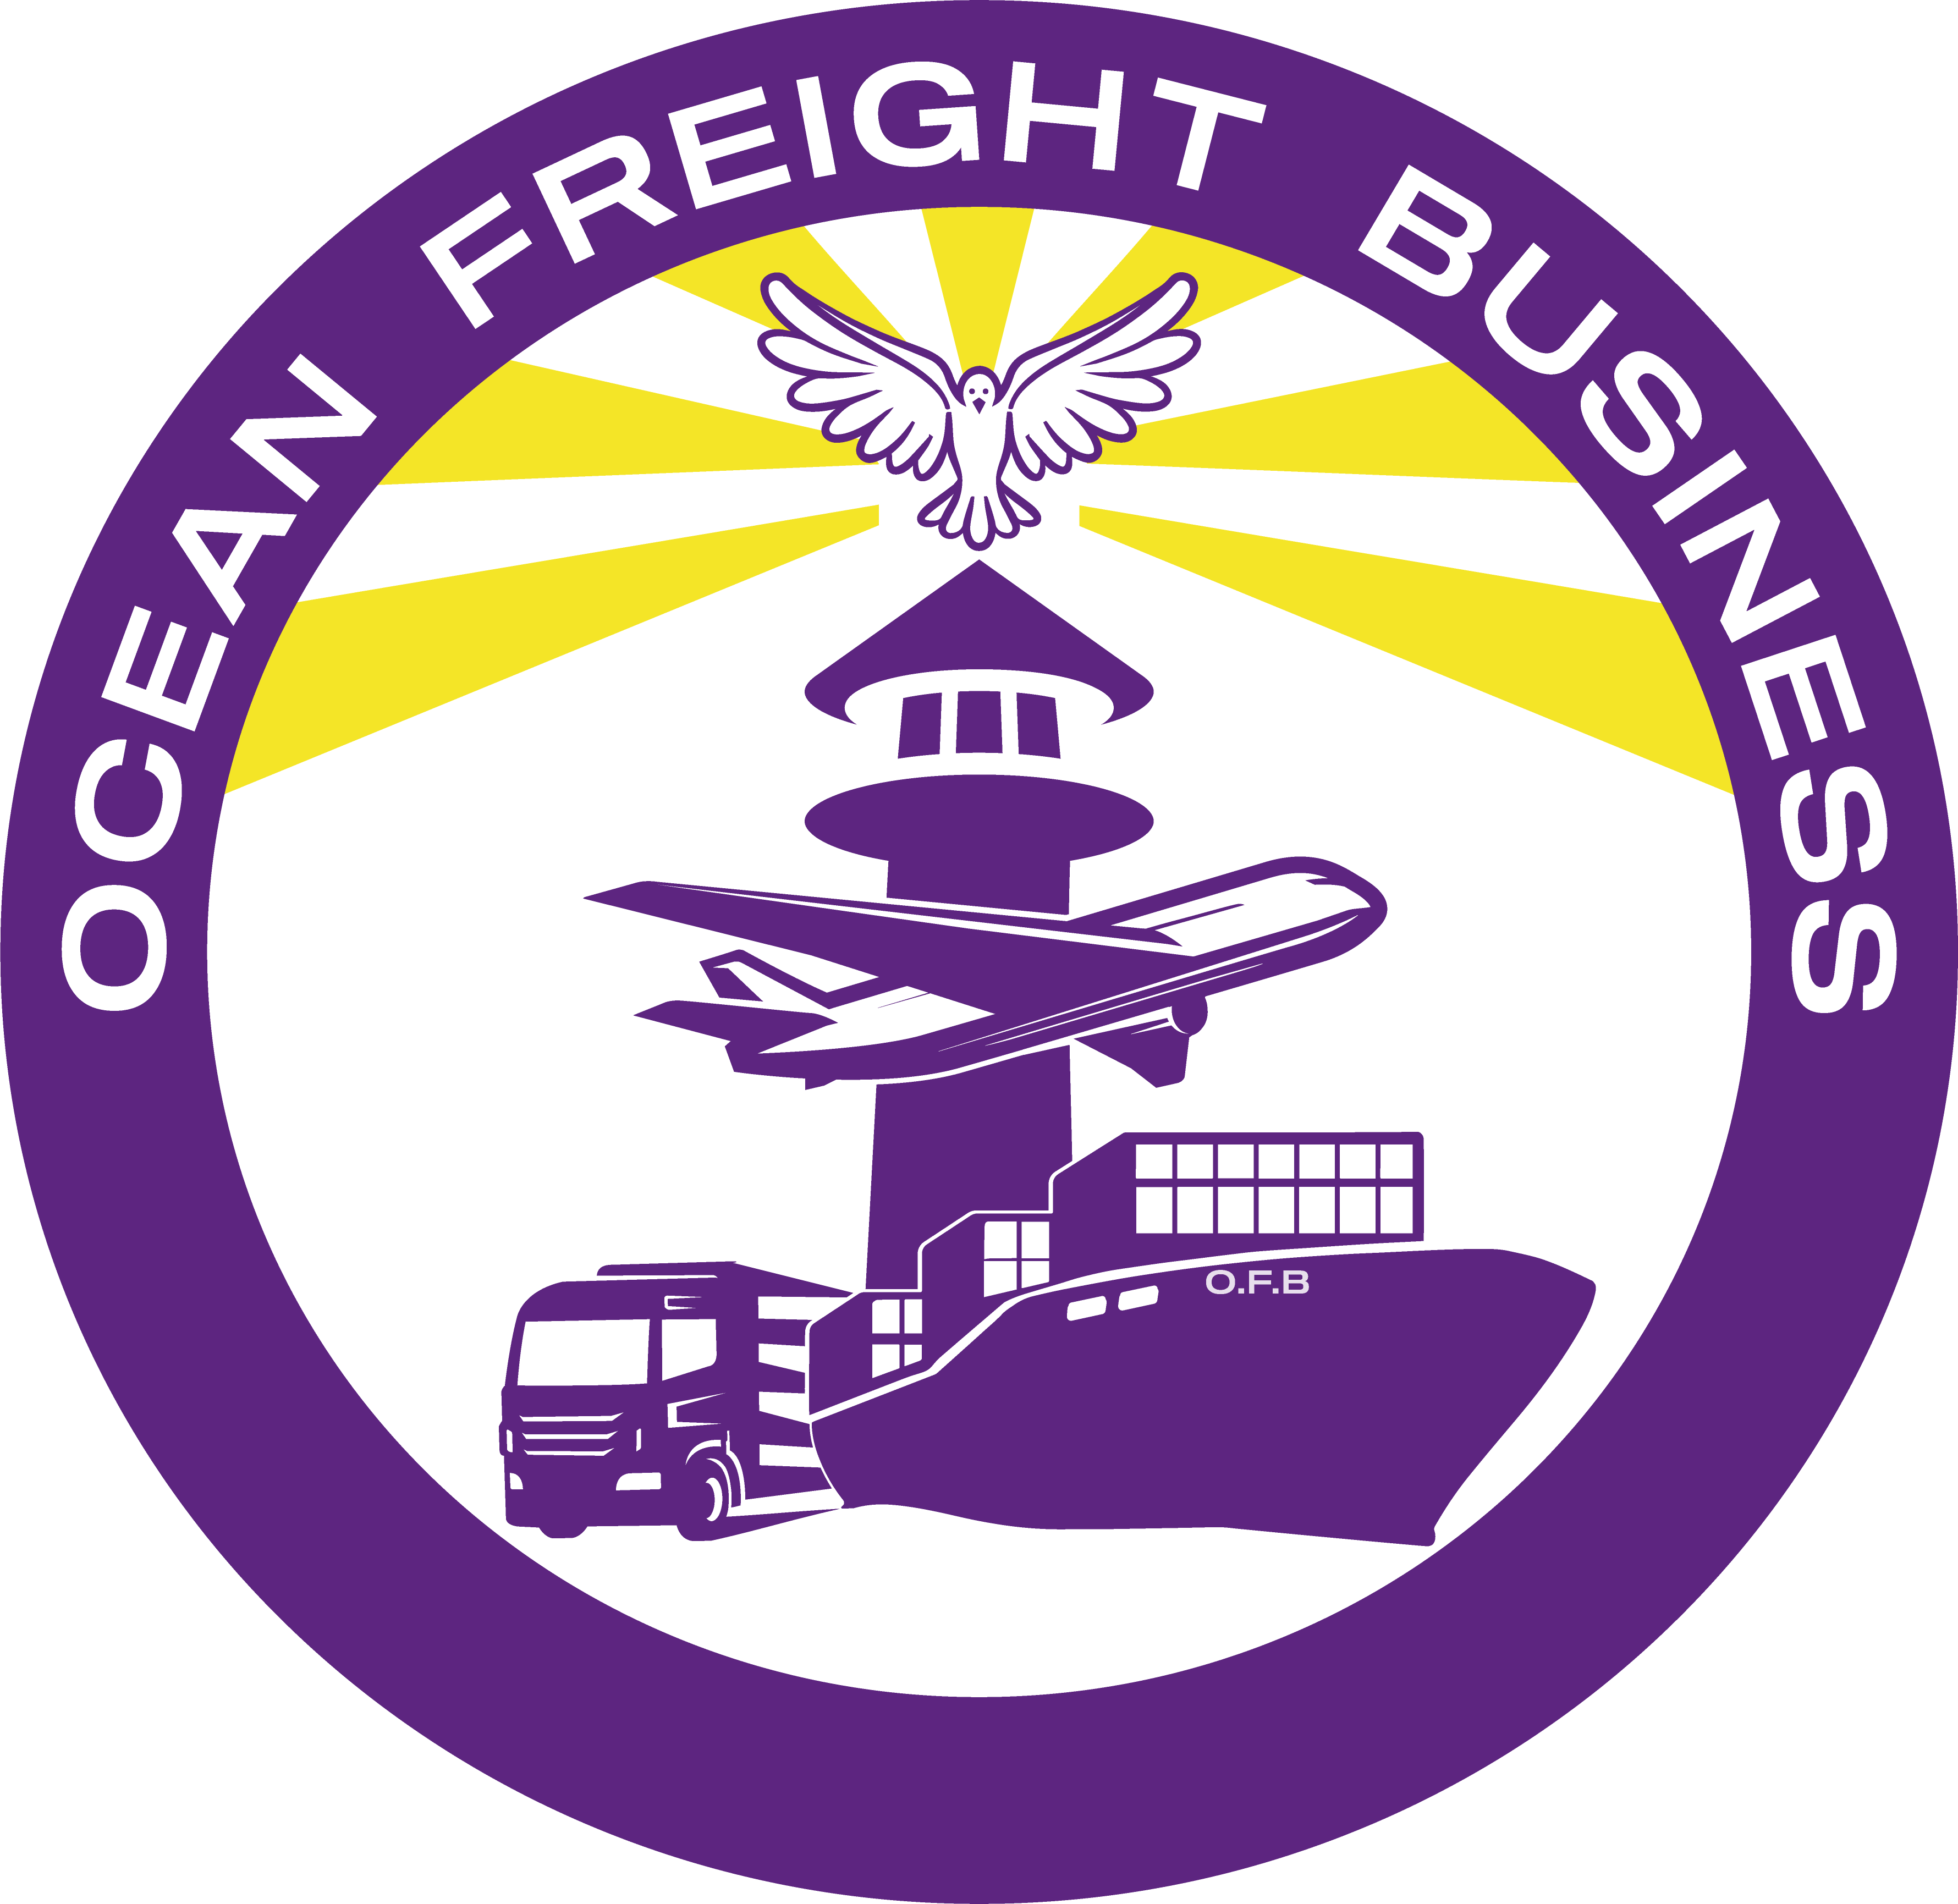 Ocean Freight Business